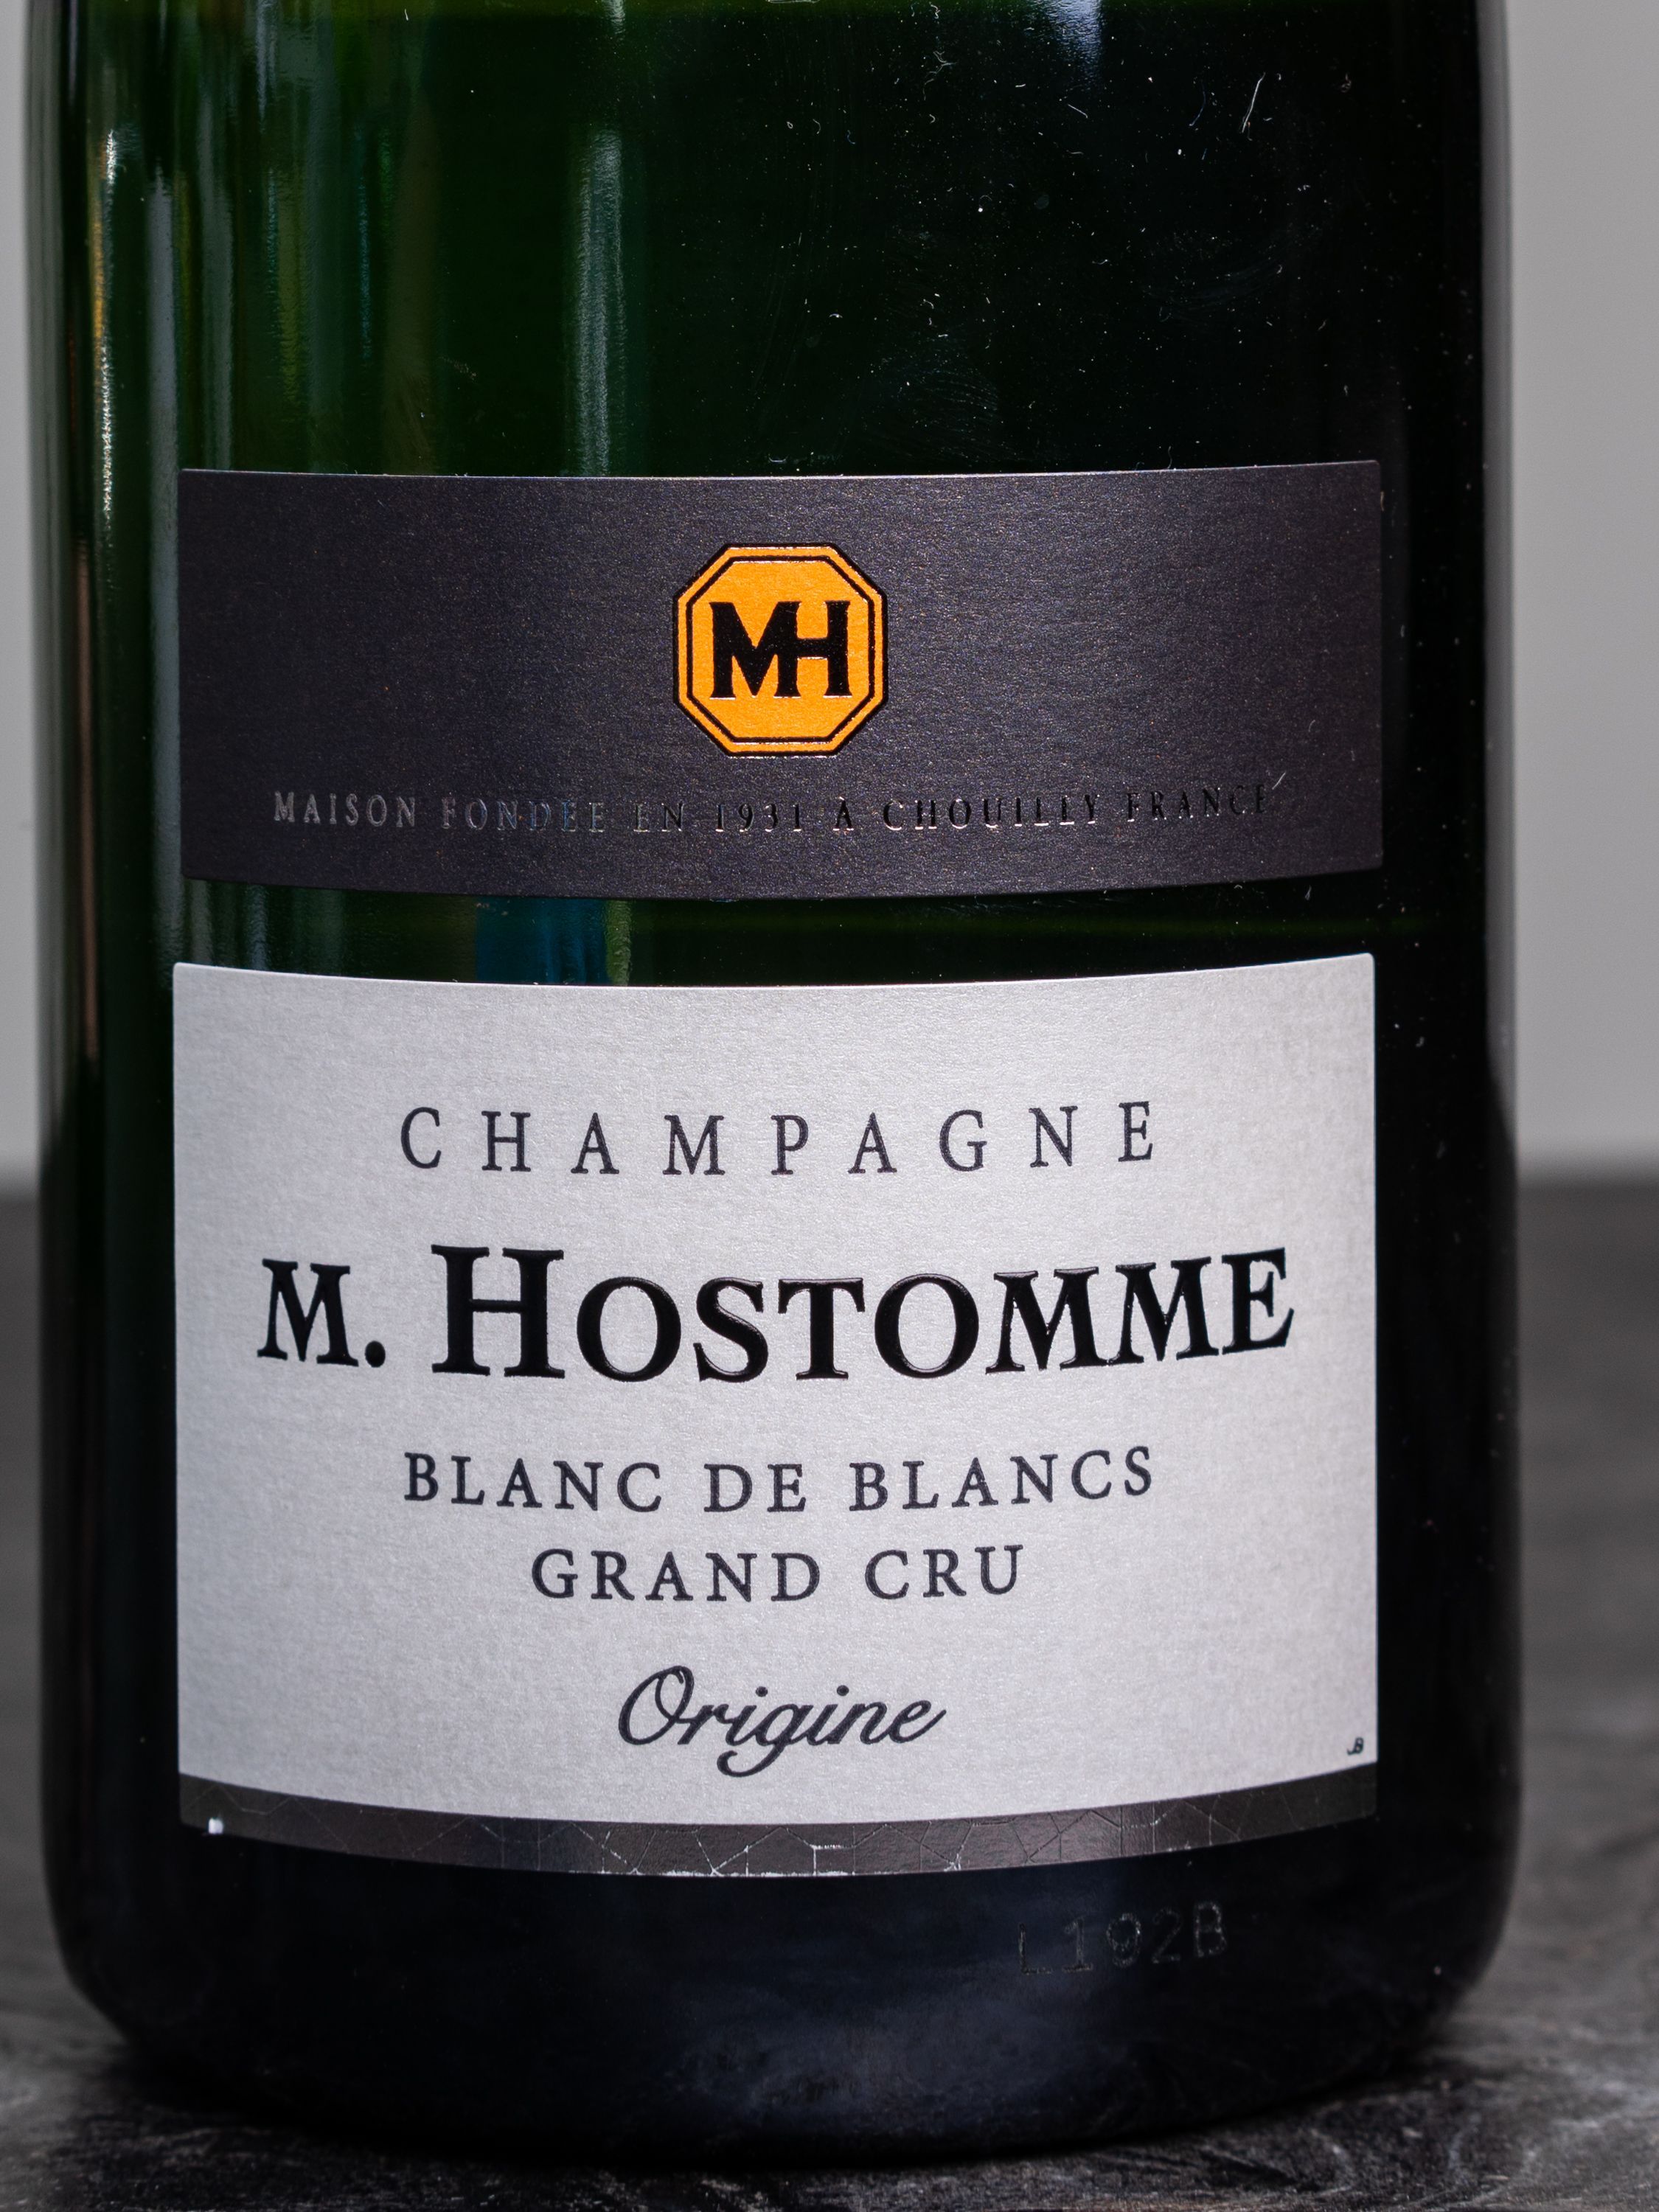 Шампанское M. Hostomme Origine Blanc de Blancs Grand Cru Champagne / М.Остомм Ориджин Блан де Блан Гран Крю